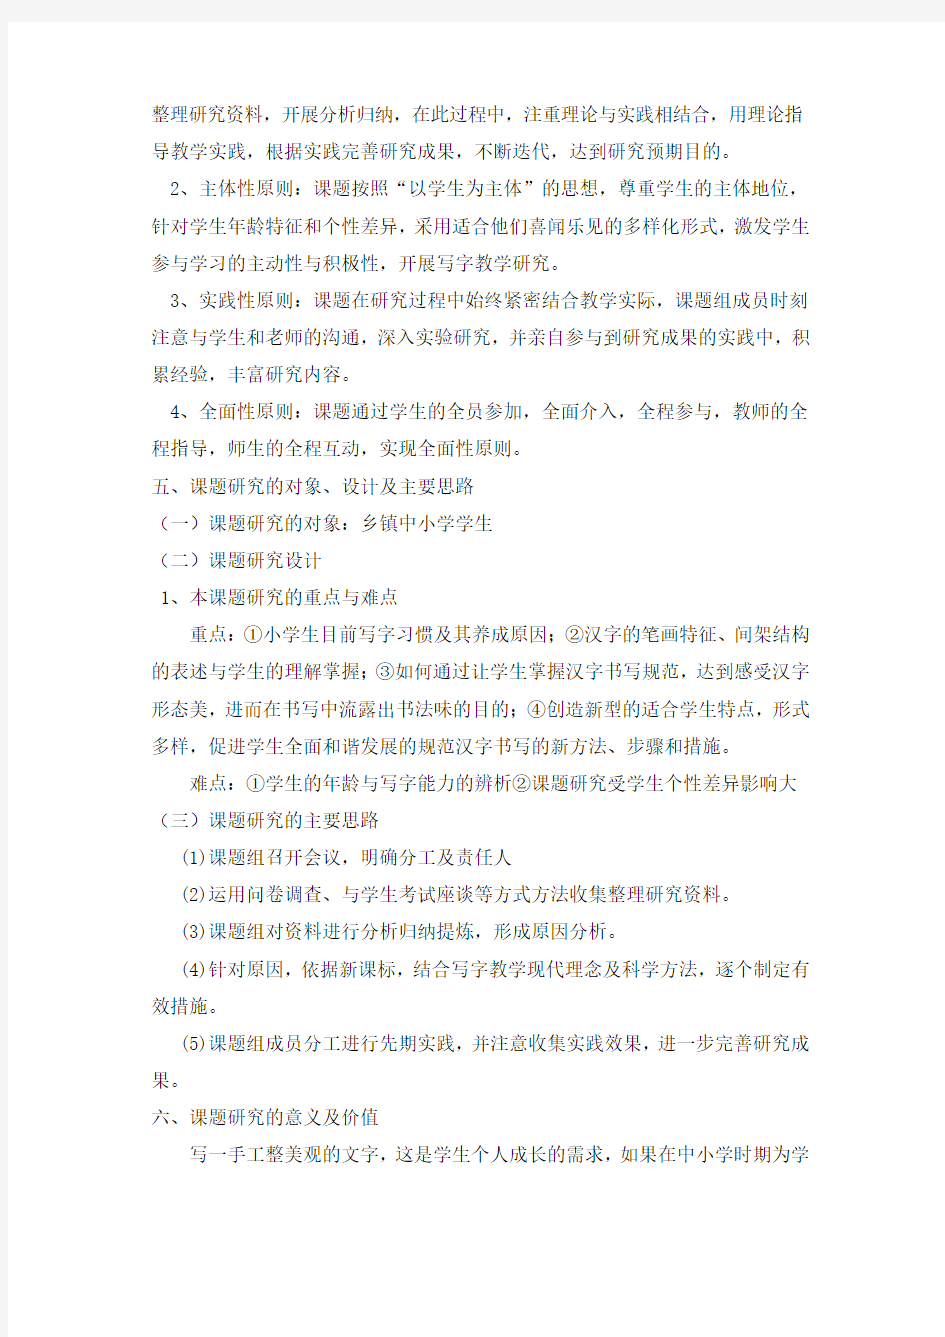 农村学生汉字书写规范有效性研究 开题报告